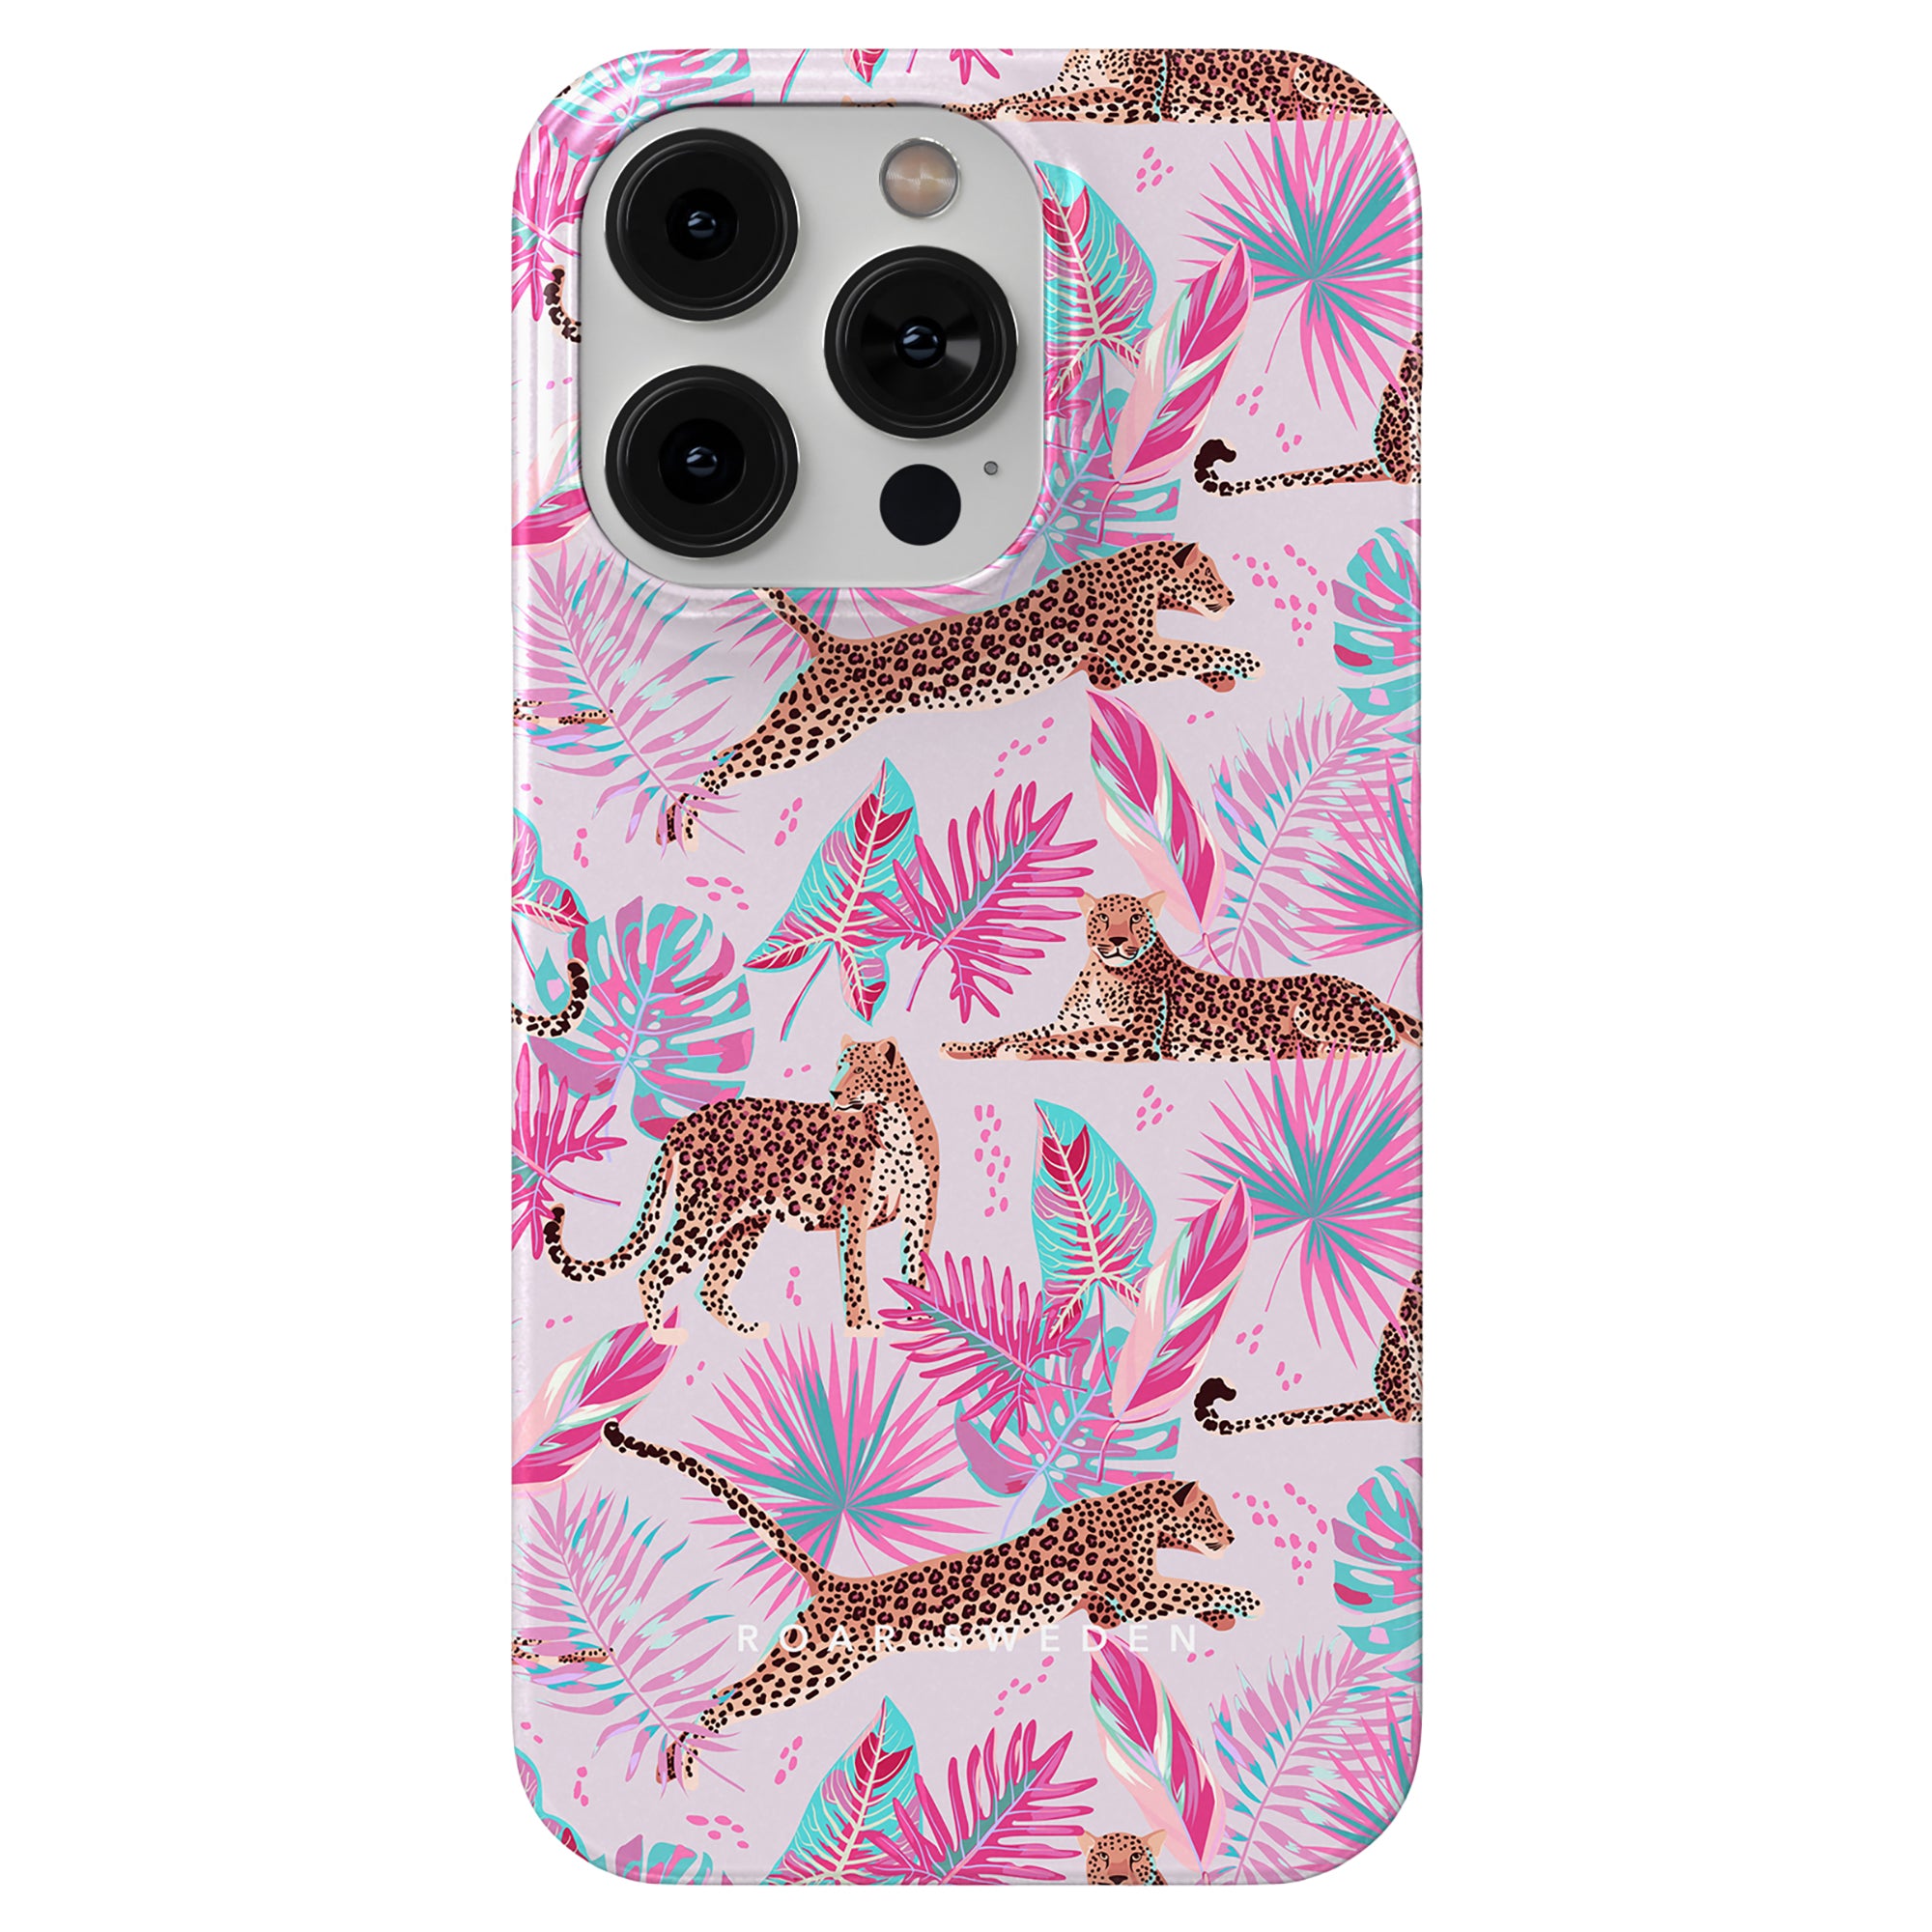 En rosa Chill mobilskal med leoparder och palmträd.